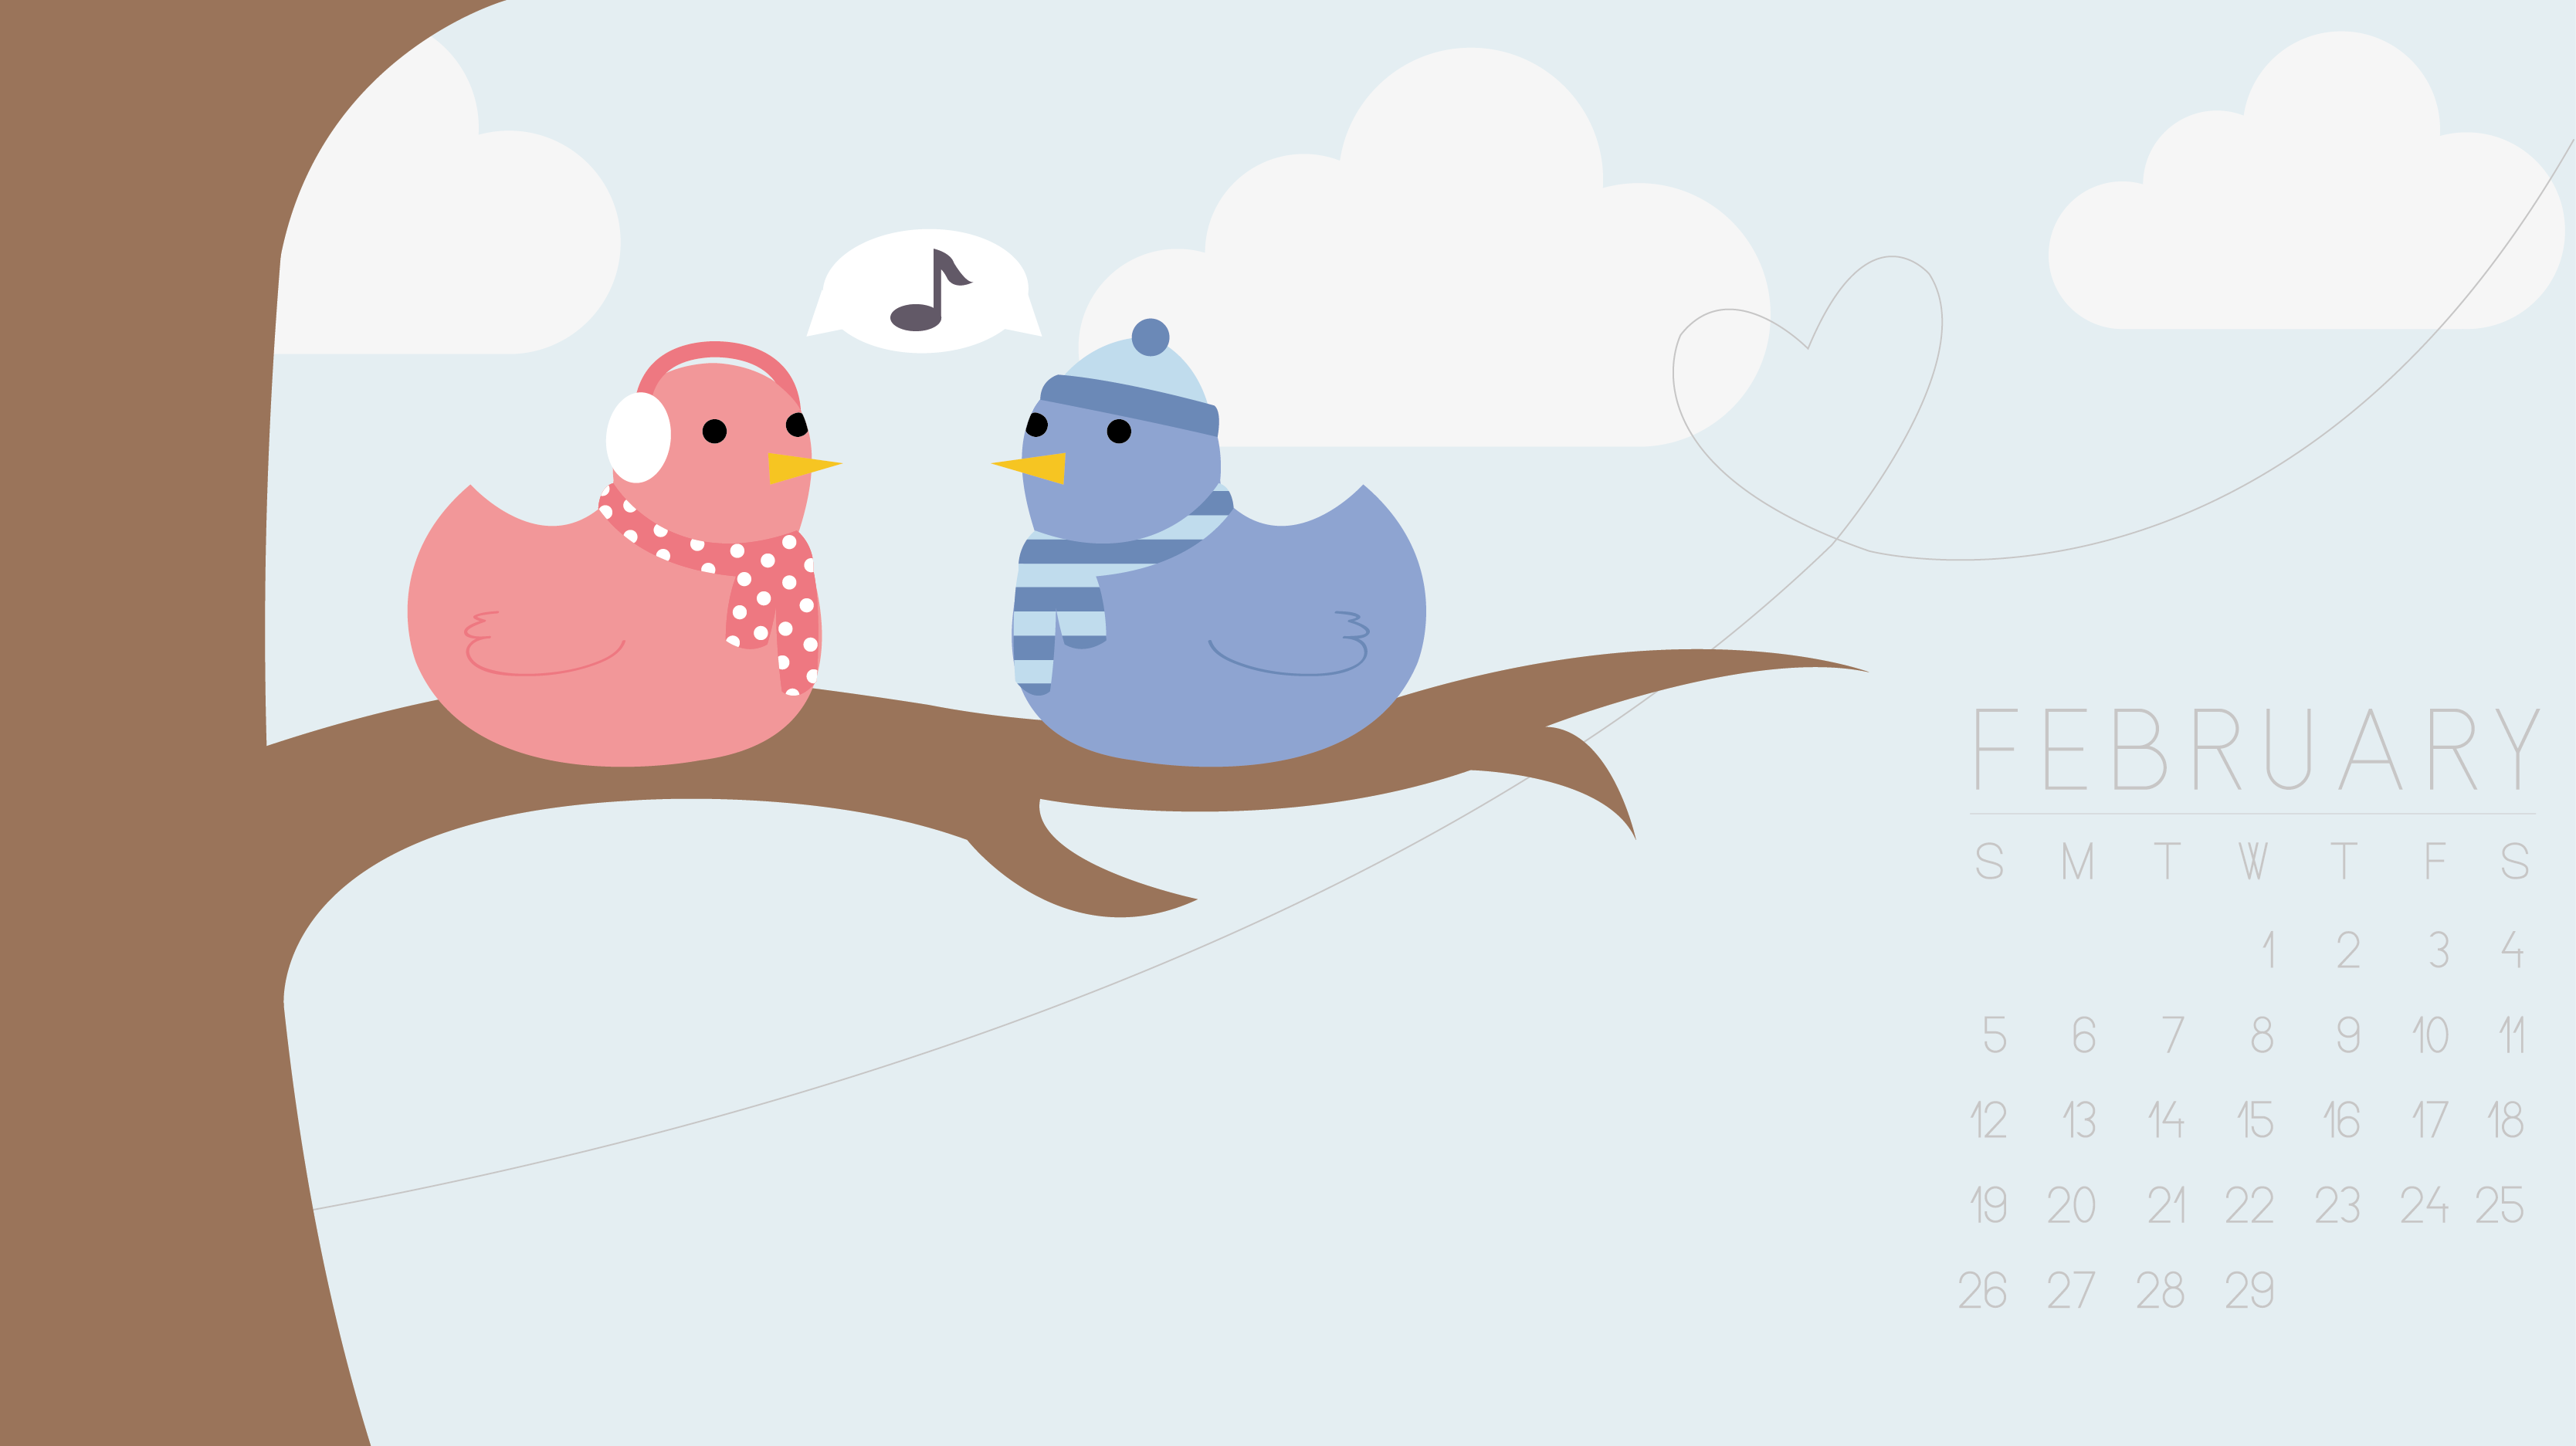 February 2012 Desktop Wallpaper - Birds by technicolorblackout on ...